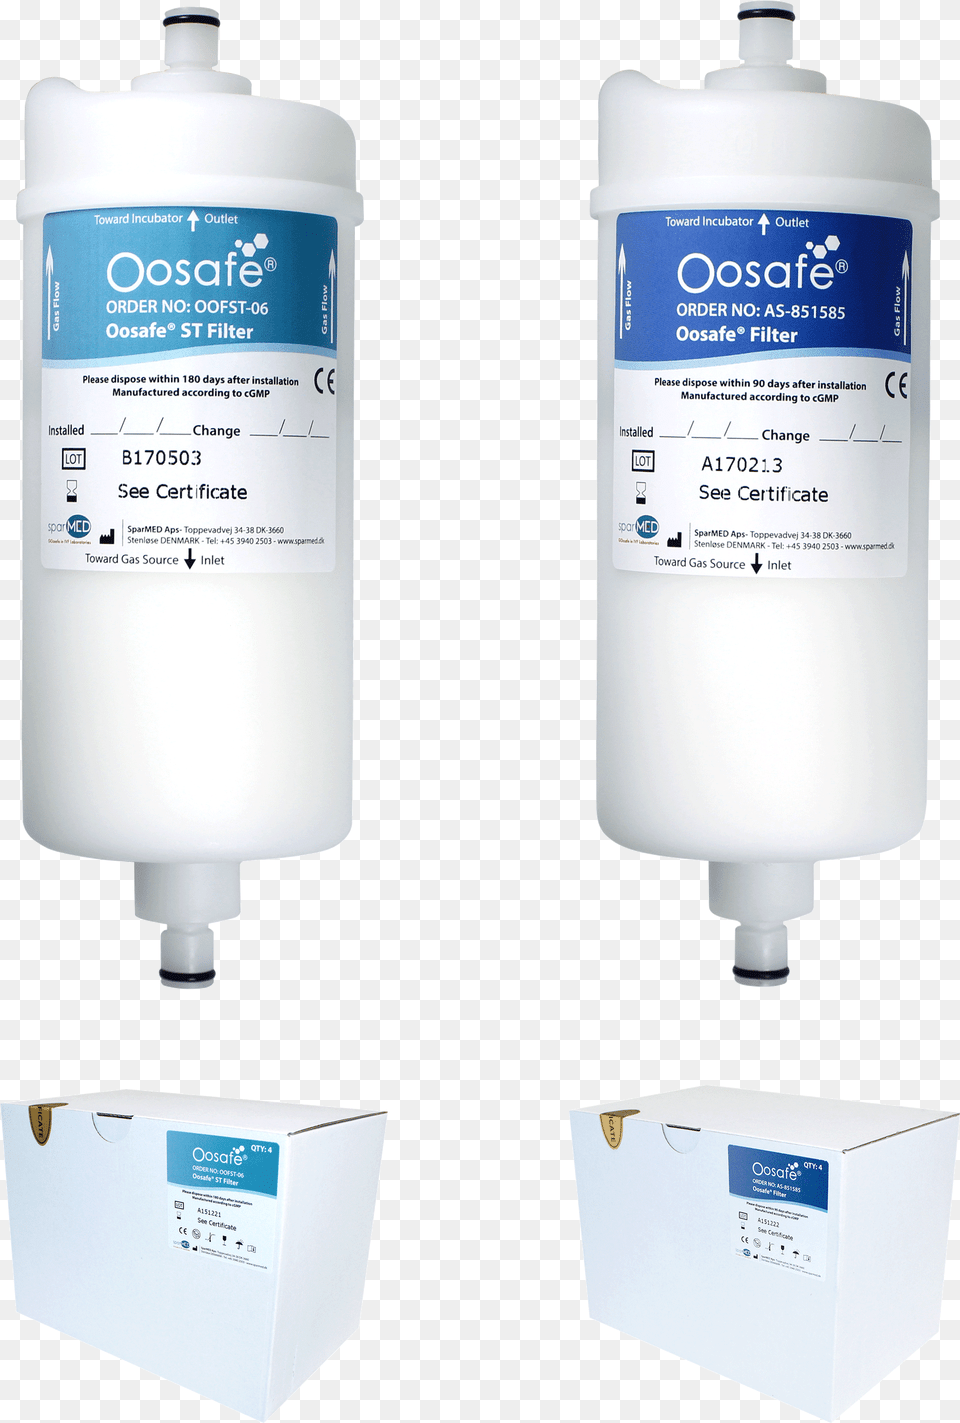 Oosafe Filter, Cylinder, Bottle, Shaker, Box Free Png Download